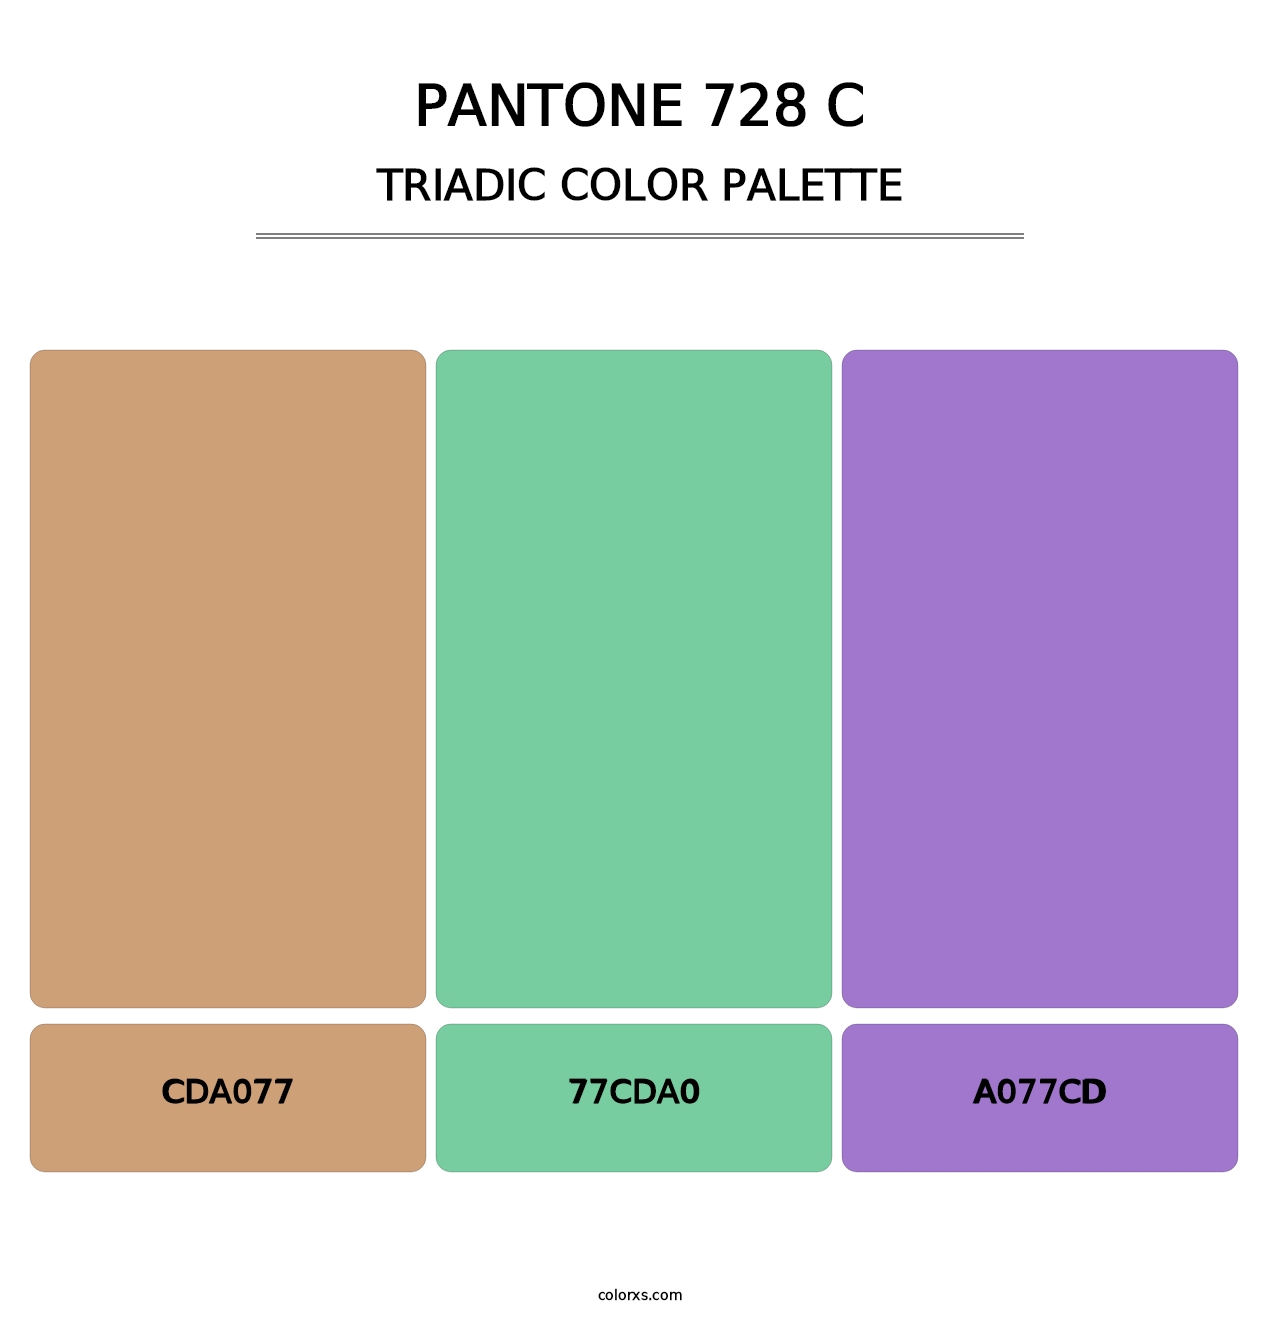 PANTONE 728 C - Triadic Color Palette